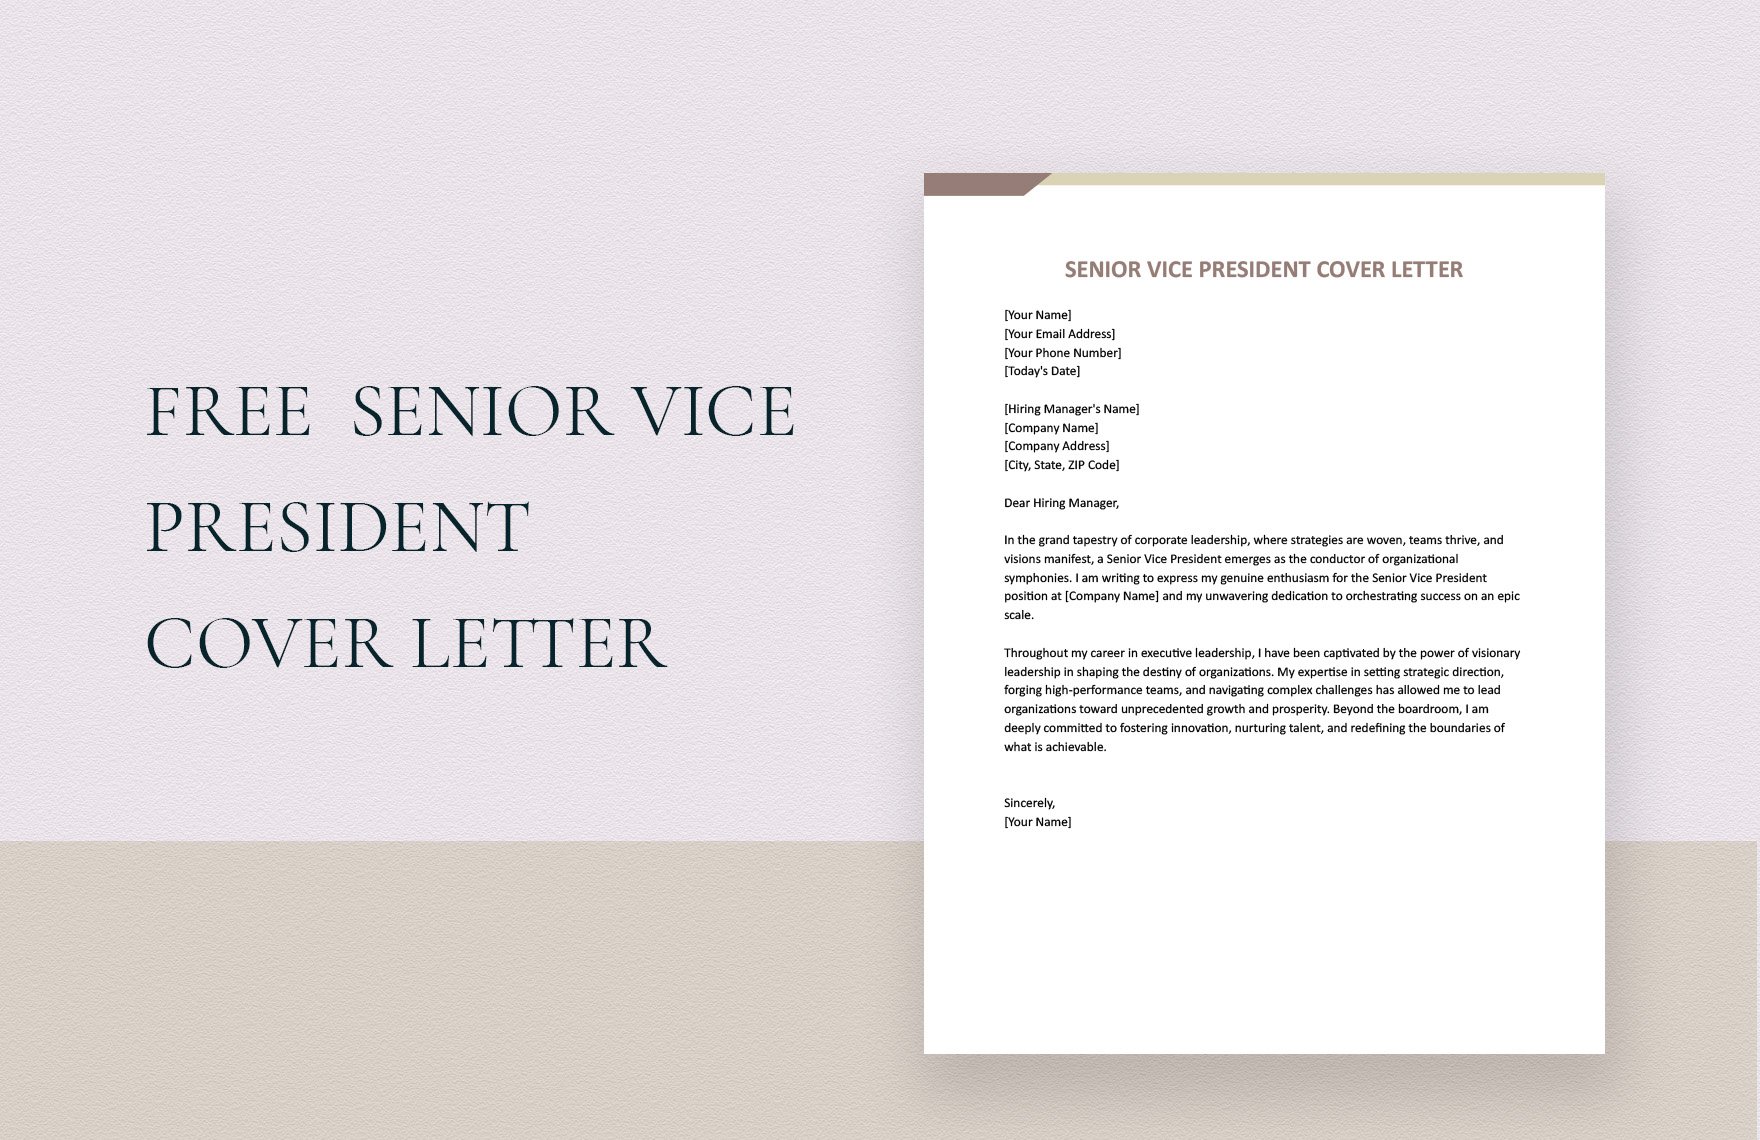 Senior Vice President Cover Letter